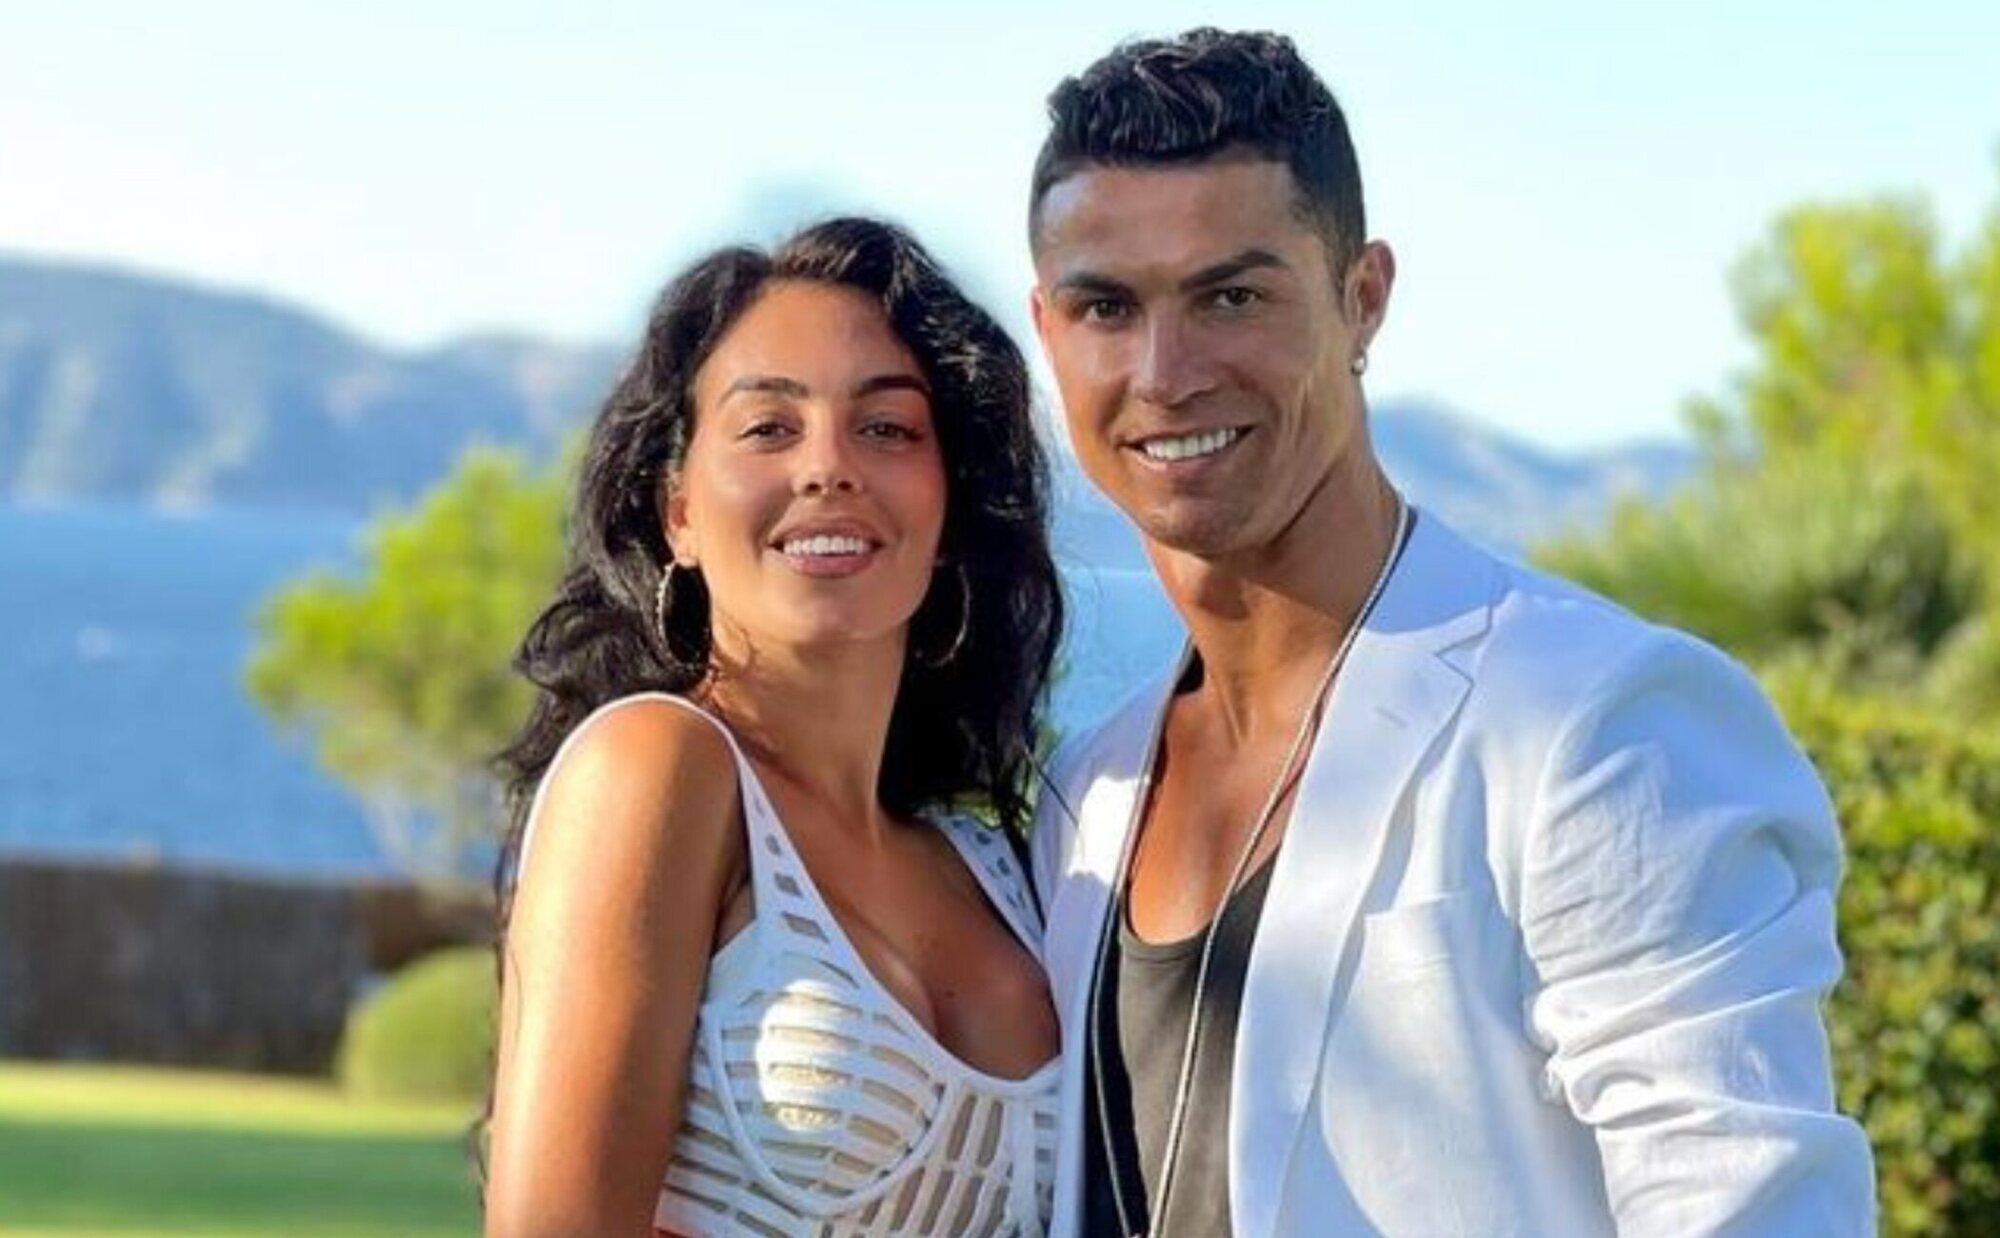 Georgina Rodríguez y Cristiano Ronaldo tienen un contrato prenupcial: pensión vitalicia, una casa a su nombre...